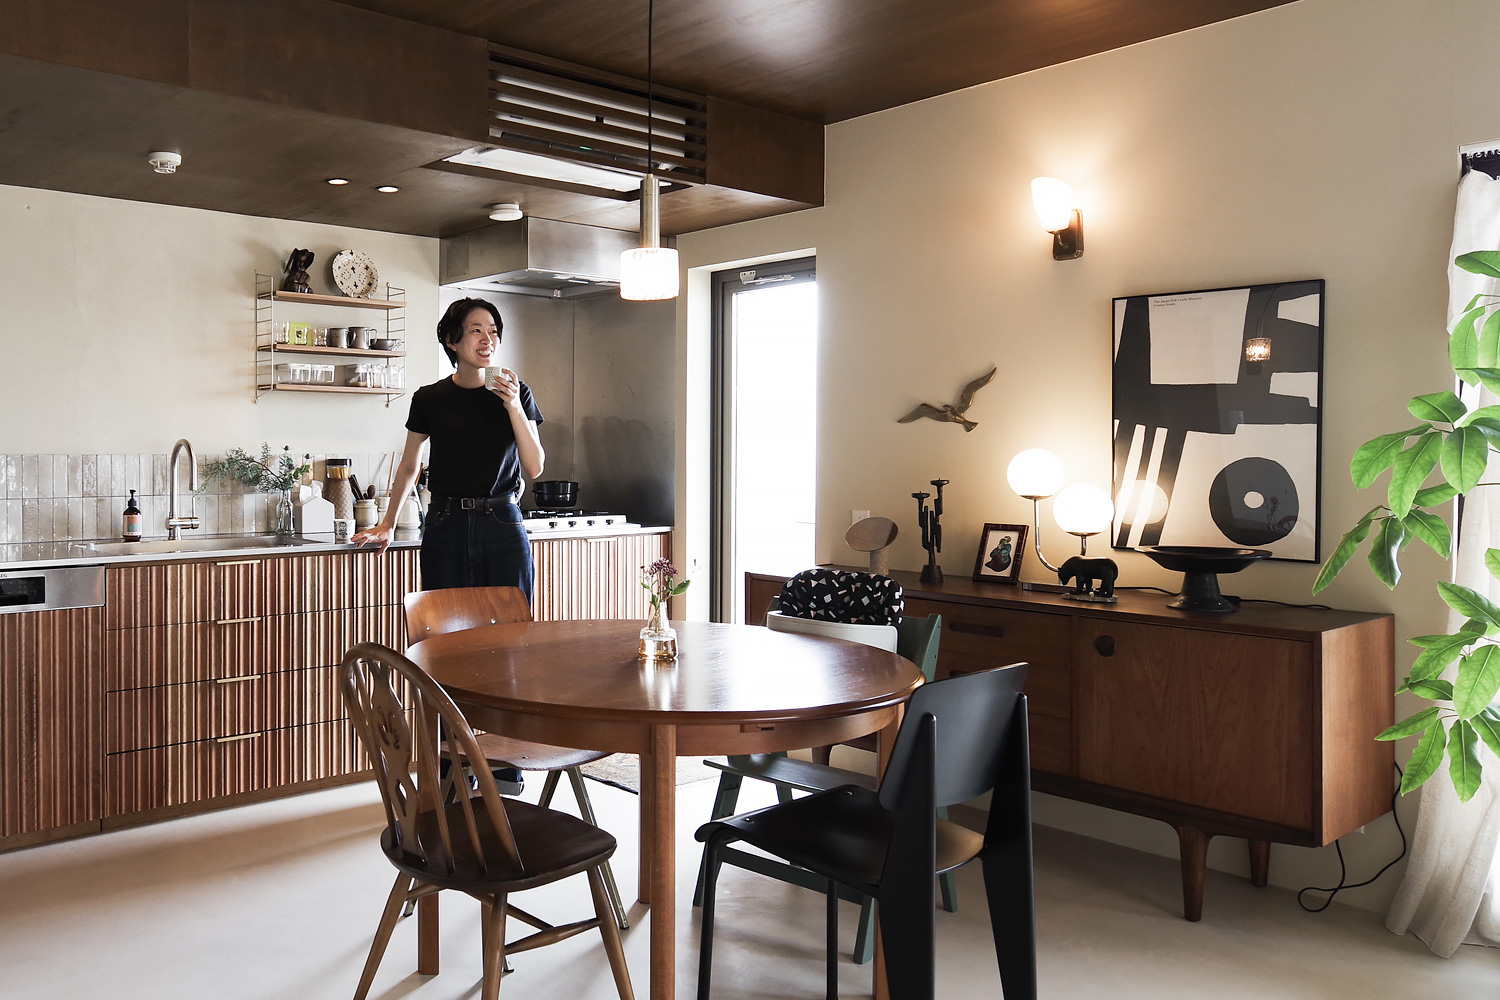 WORKS 179「余白をデザインした家」名古屋市昭和区マンションリノベーション